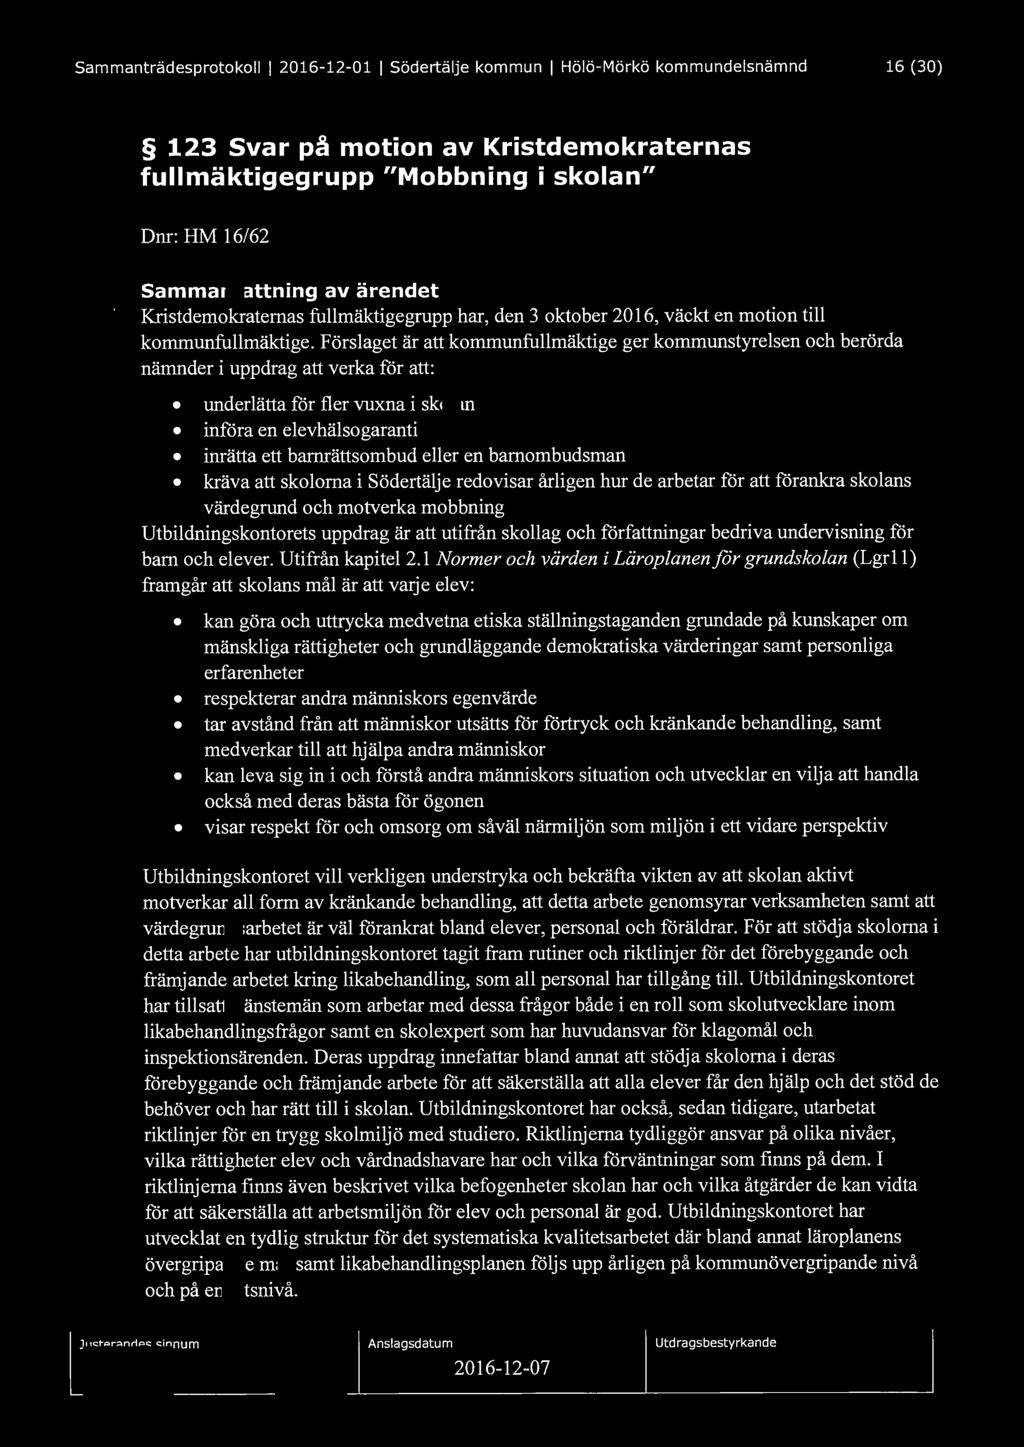 Sammanträdesprotokoll l 2016-12-01 l Södertälje kommun l Hölö-Mörkö kommundelsnämnd 16 (30) 123 Svar på motion av Kristdemokraternas fullmäktigegrupp "Mobbning i skolan" Dnr: HM 16/62 Sammanfattning